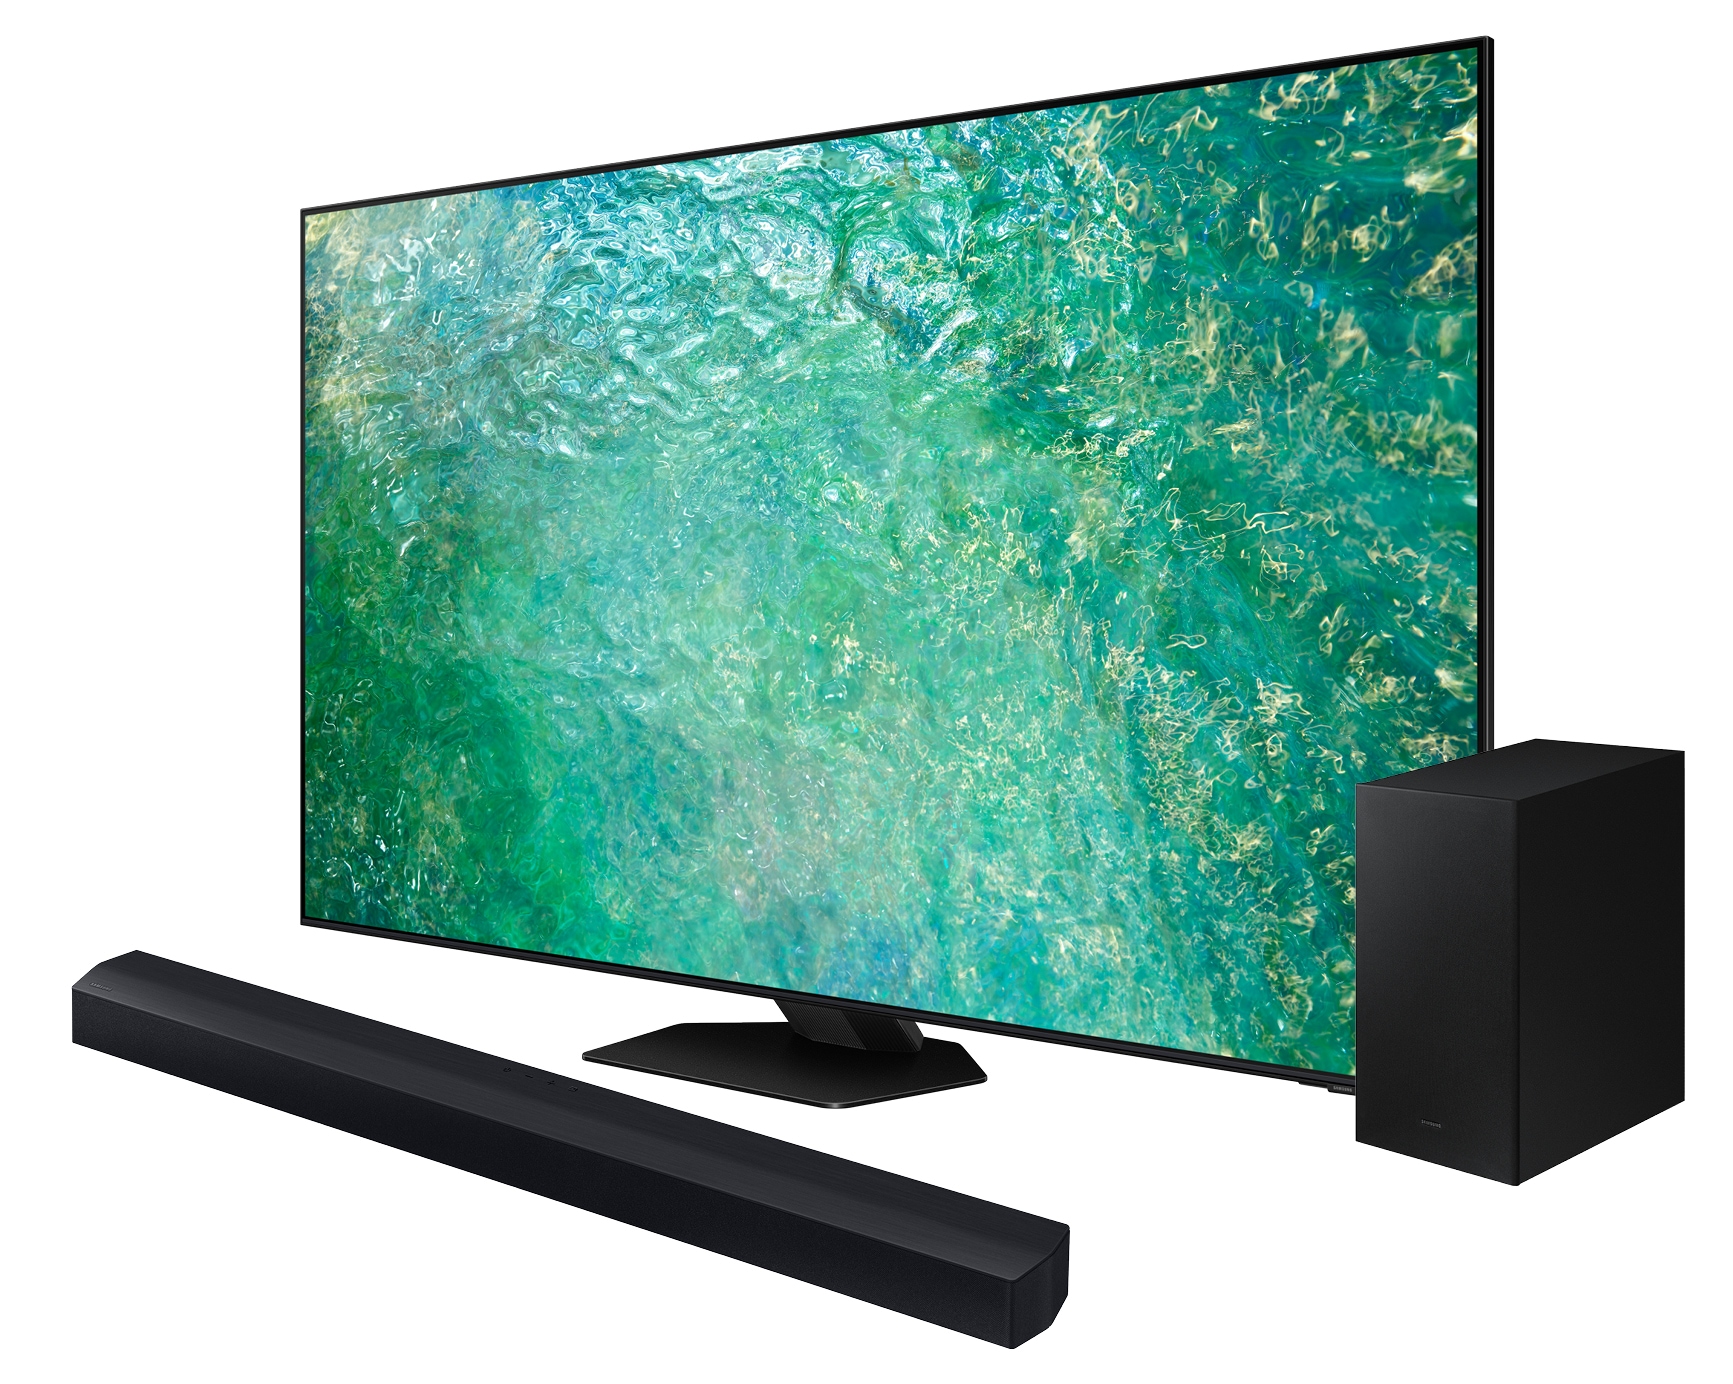 Samsung Pachet Televizor Neo QLED 4K 55QN85C, 138 cm + Soundbar HW-C450